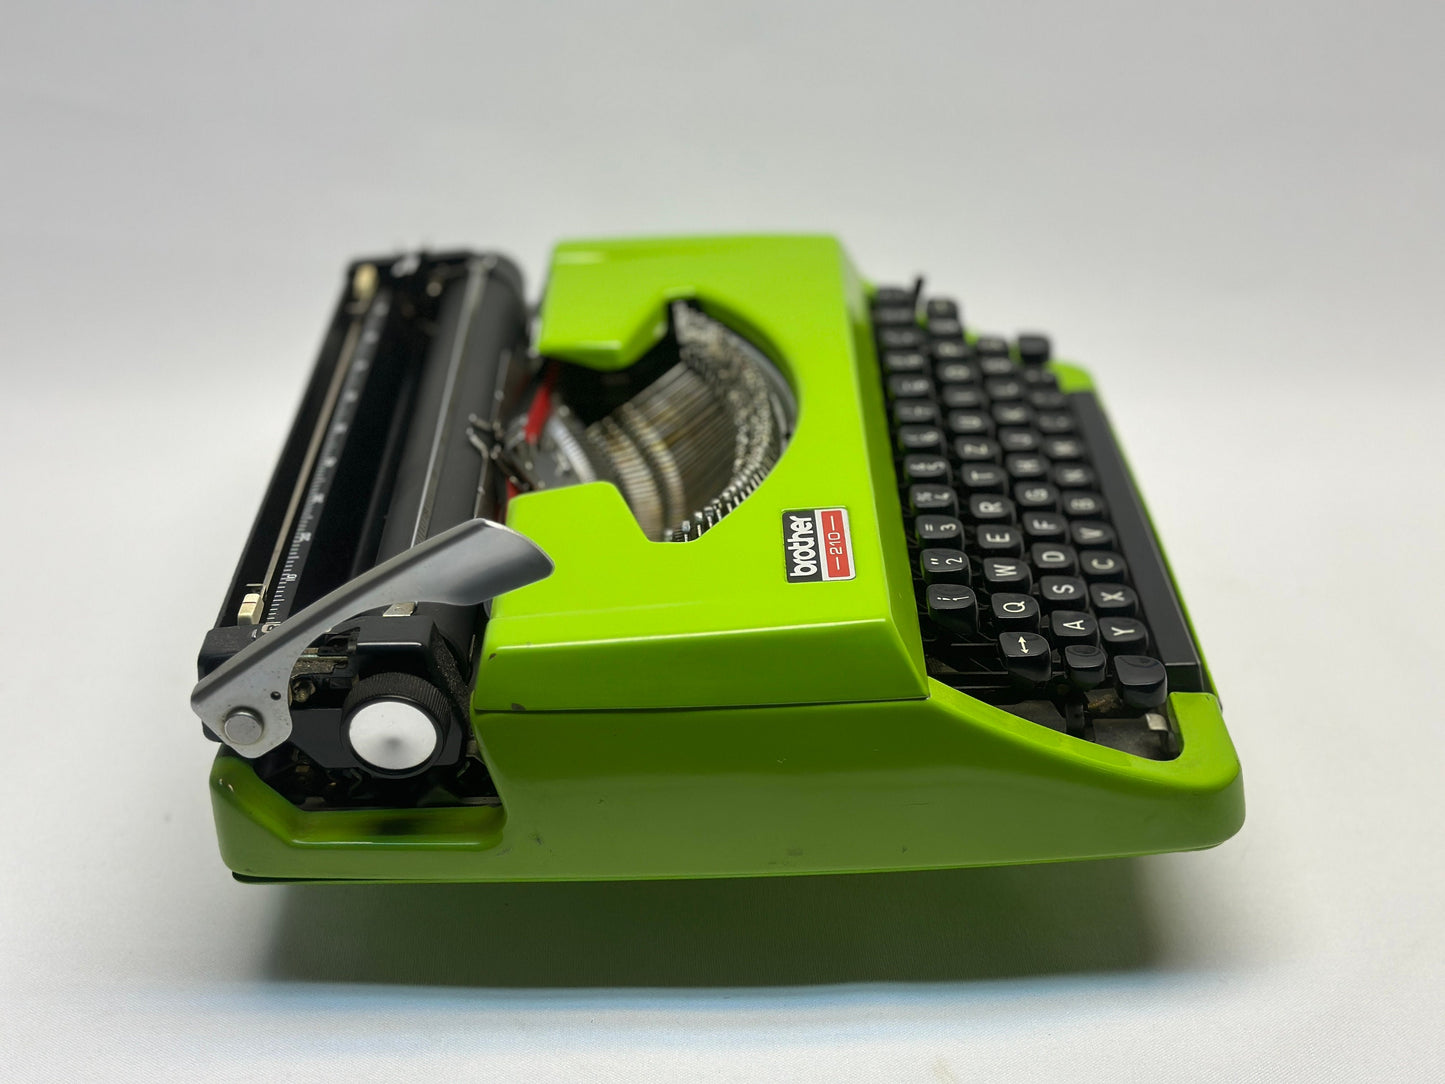 Green Brother Typewriter with Black Keyboard and Carrying Case,Antique Typewriter, typewriter working, type writer